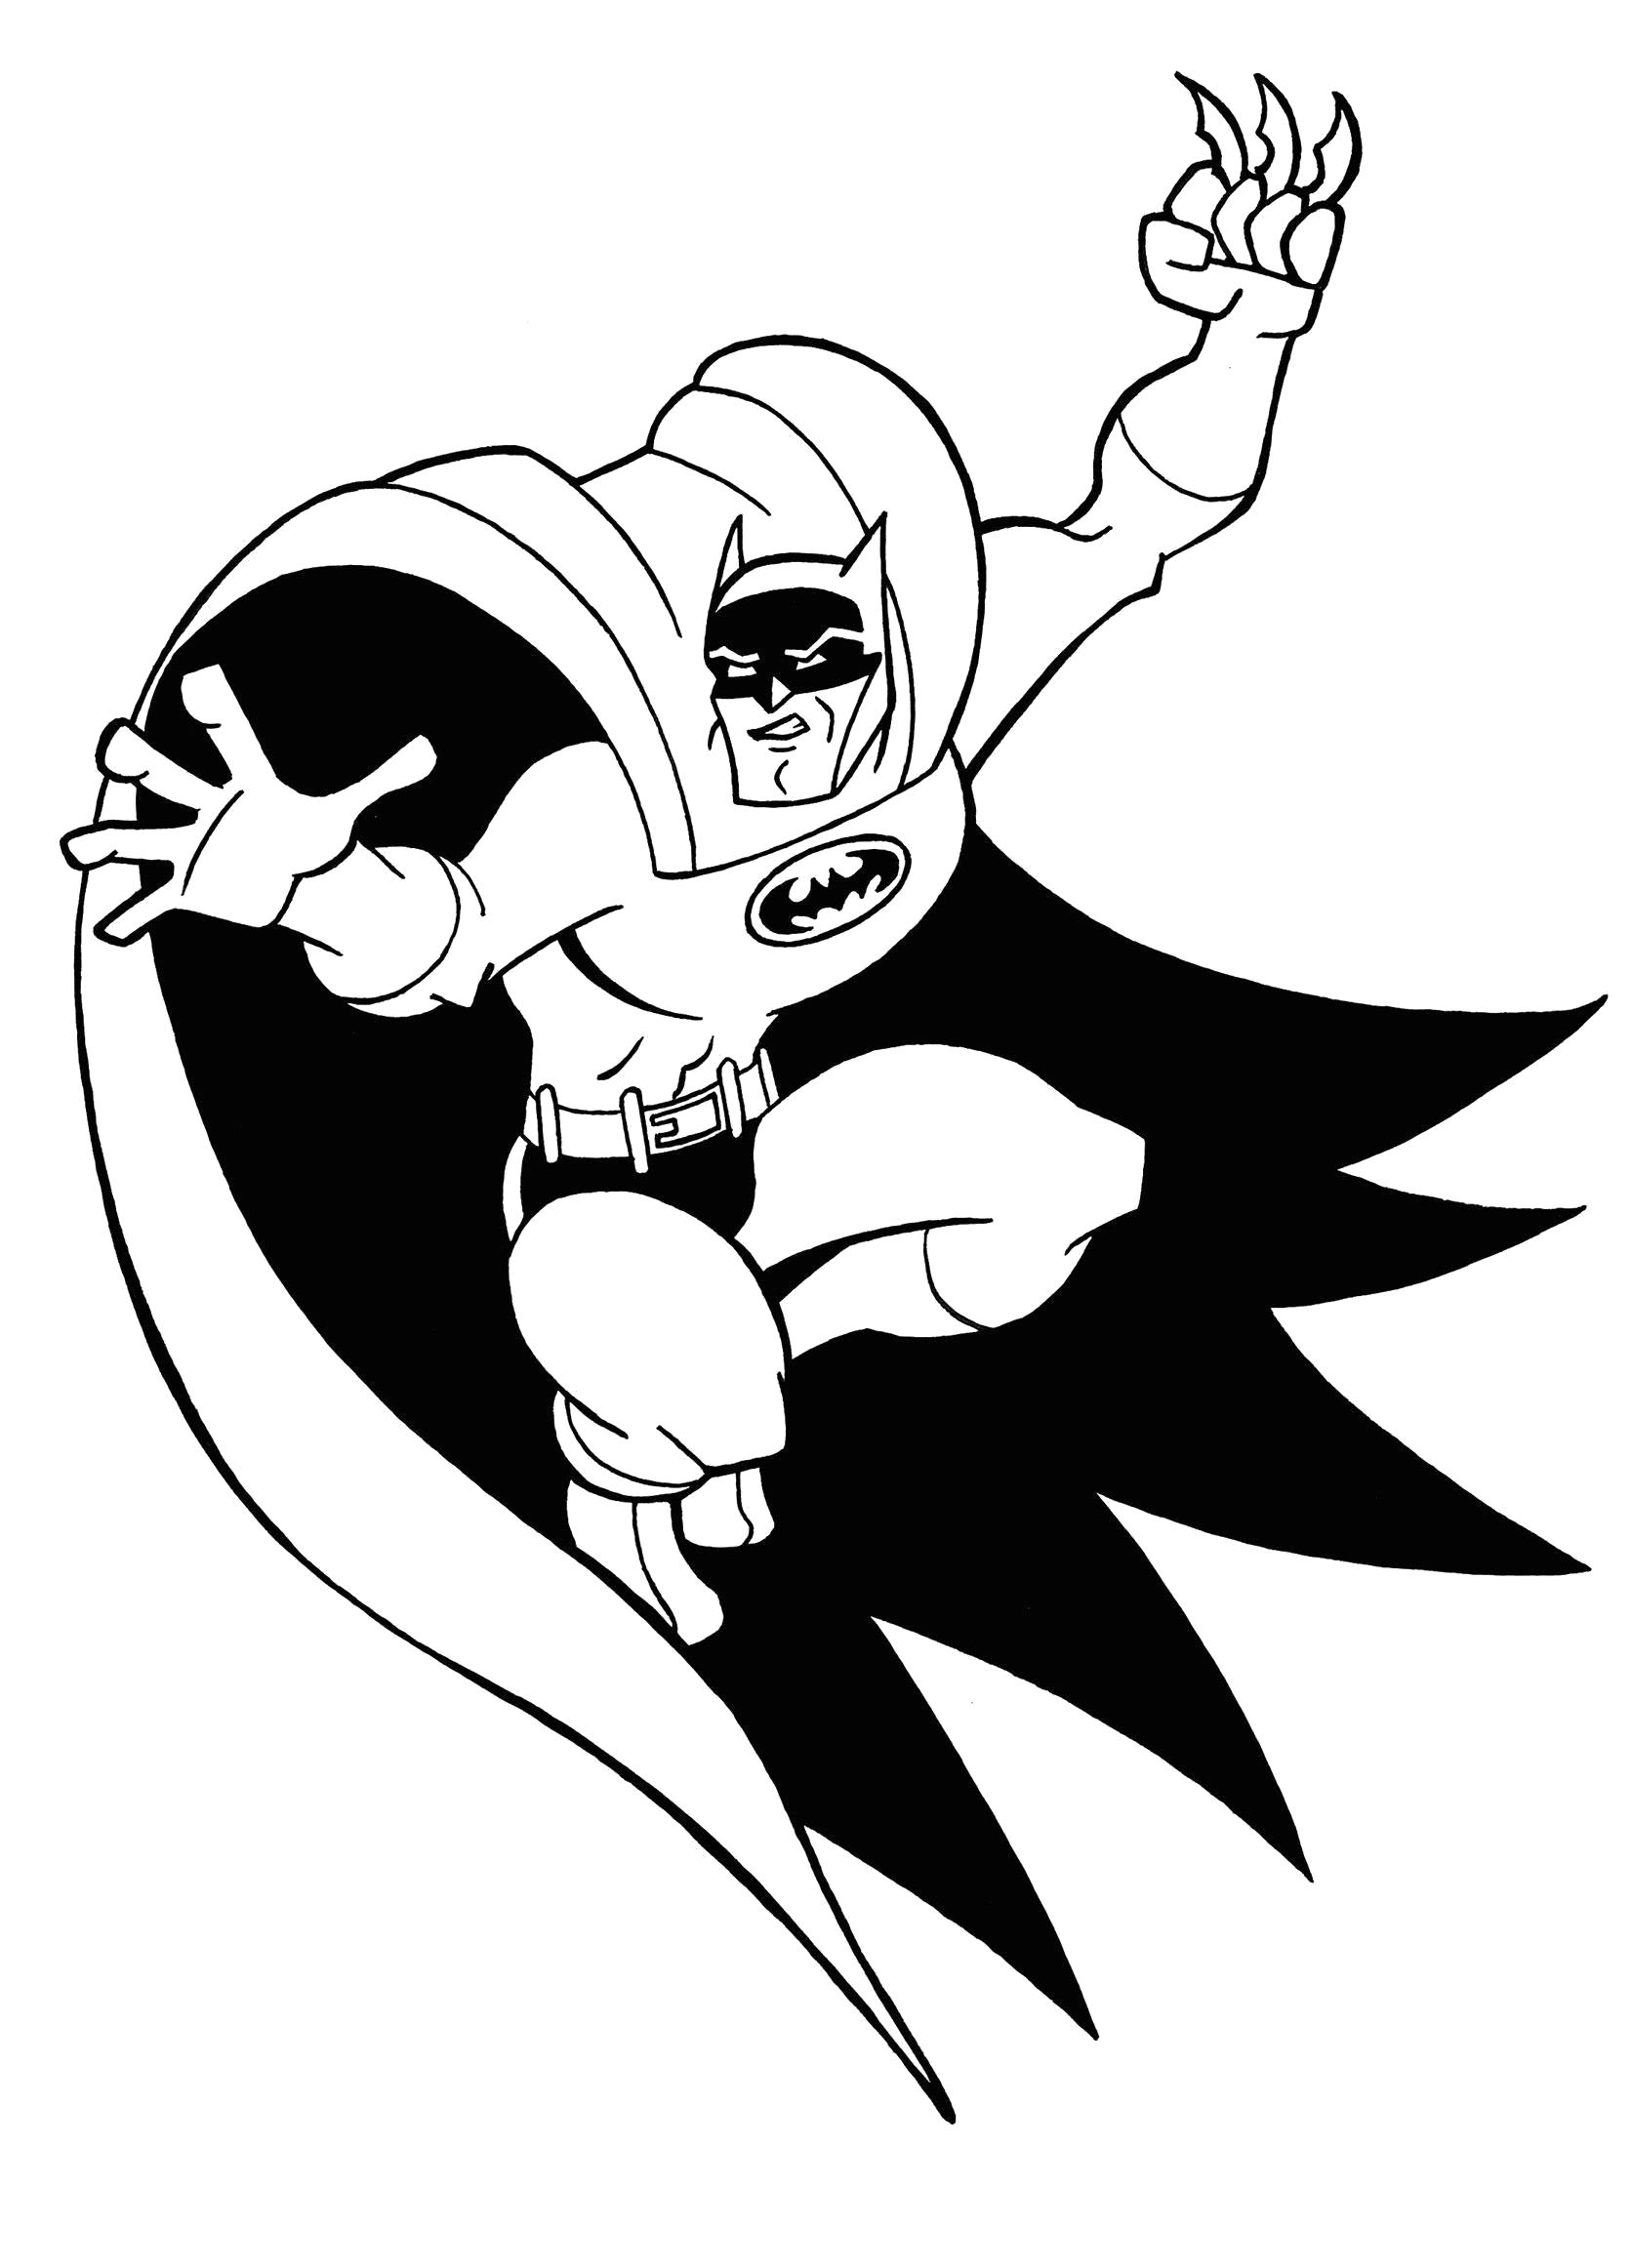 Раскраска  Бэтмен. Скачать Бэтмен.  Распечатать Комиксы и супергерои